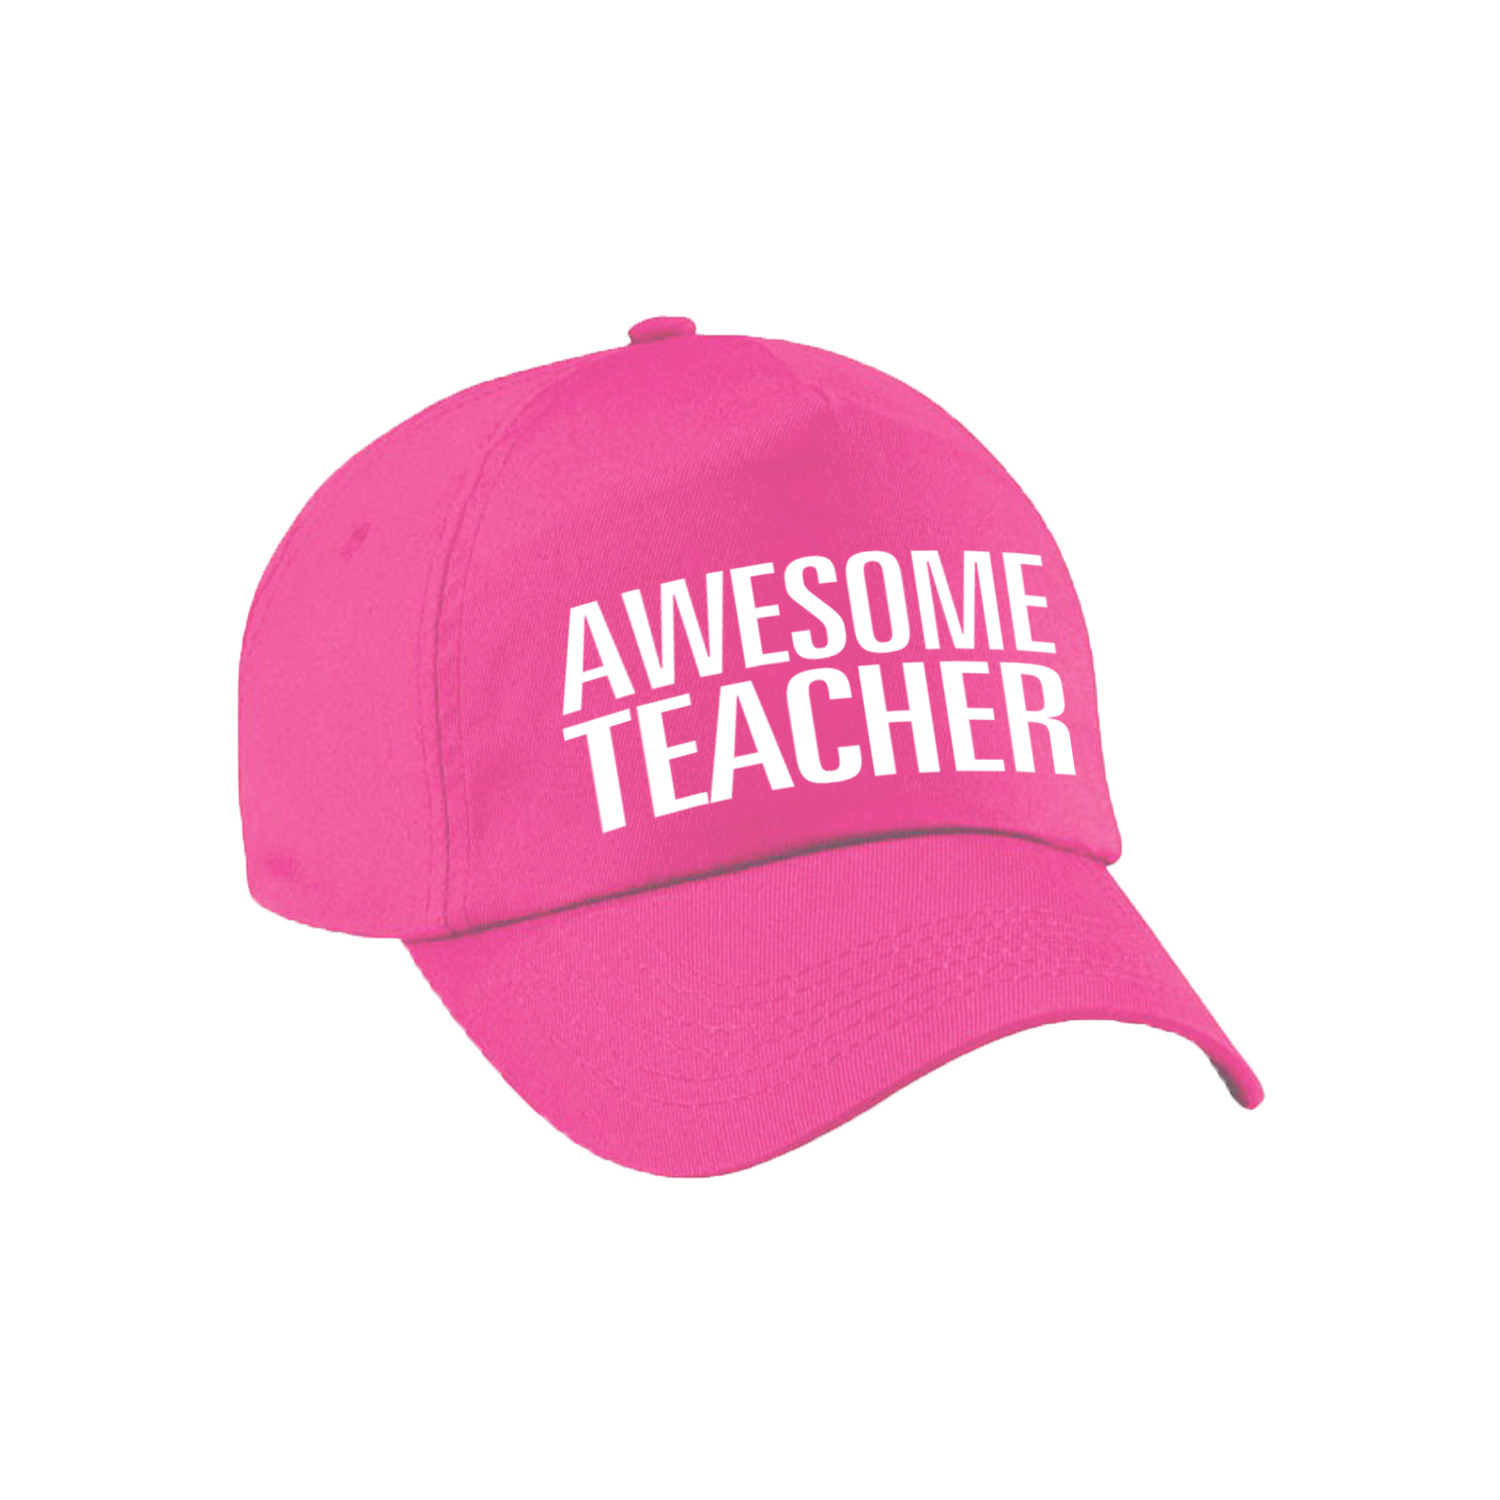 Awesome teacher pet / cap voor leraar / lerares roze voor dames en heren Top Merken Winkel